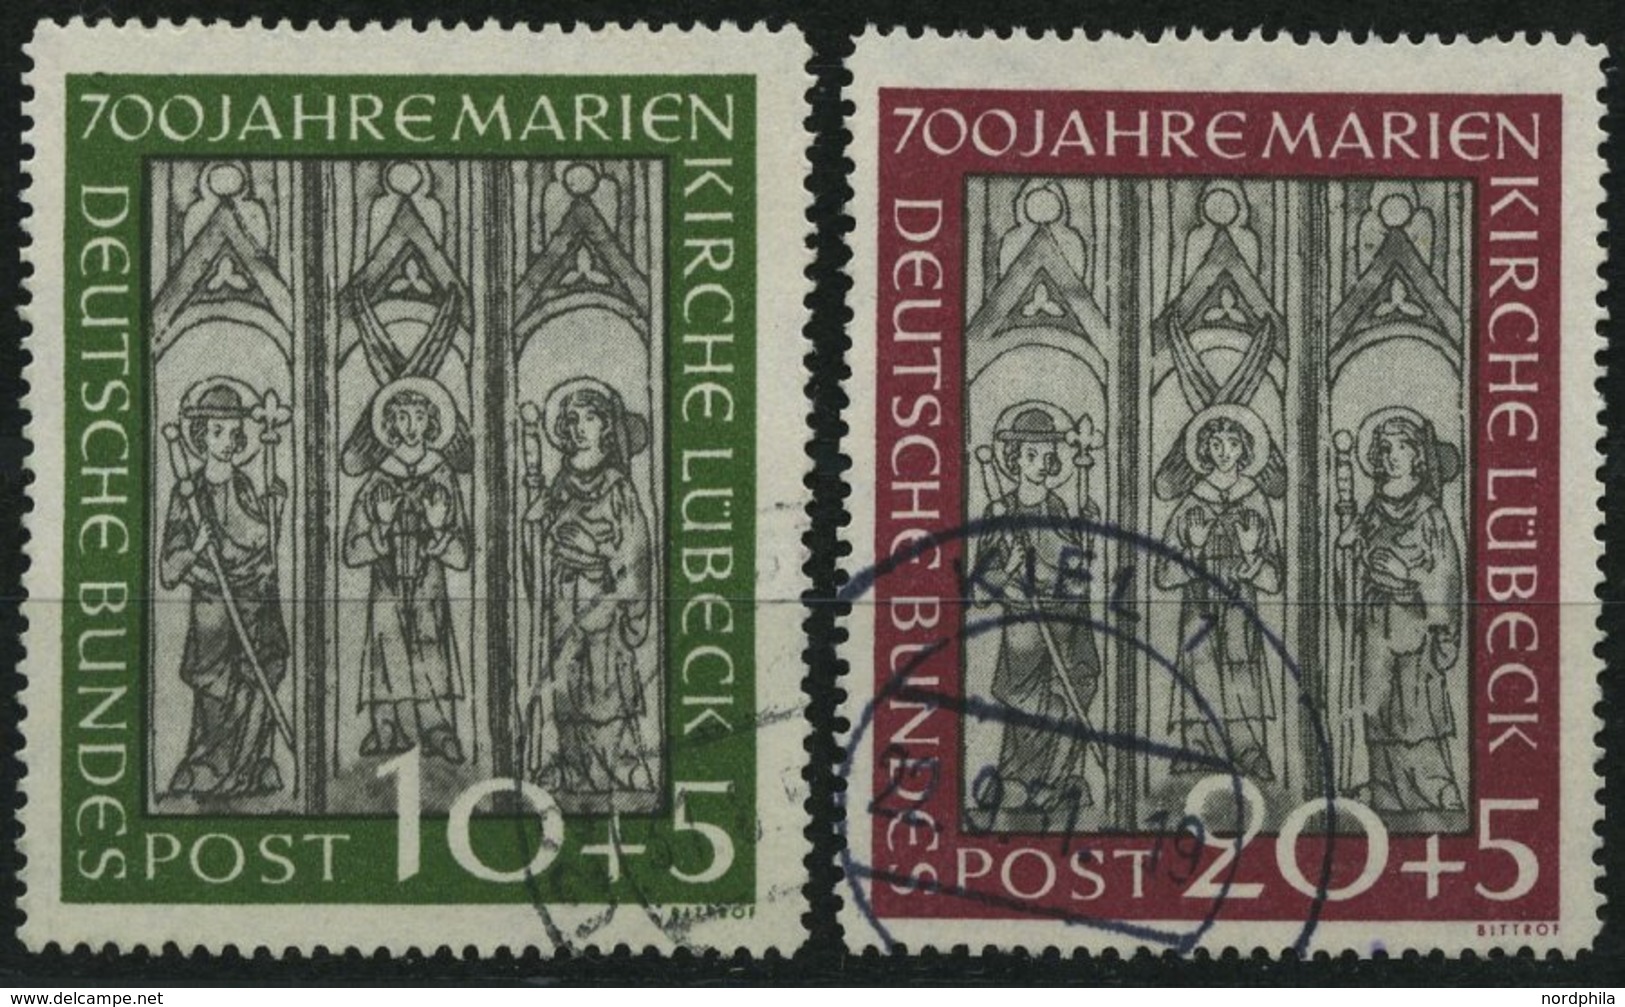 BUNDESREPUBLIK 139/40 O, 1951, Marienkirche, Pracht, Mi. (160.-) - Used Stamps